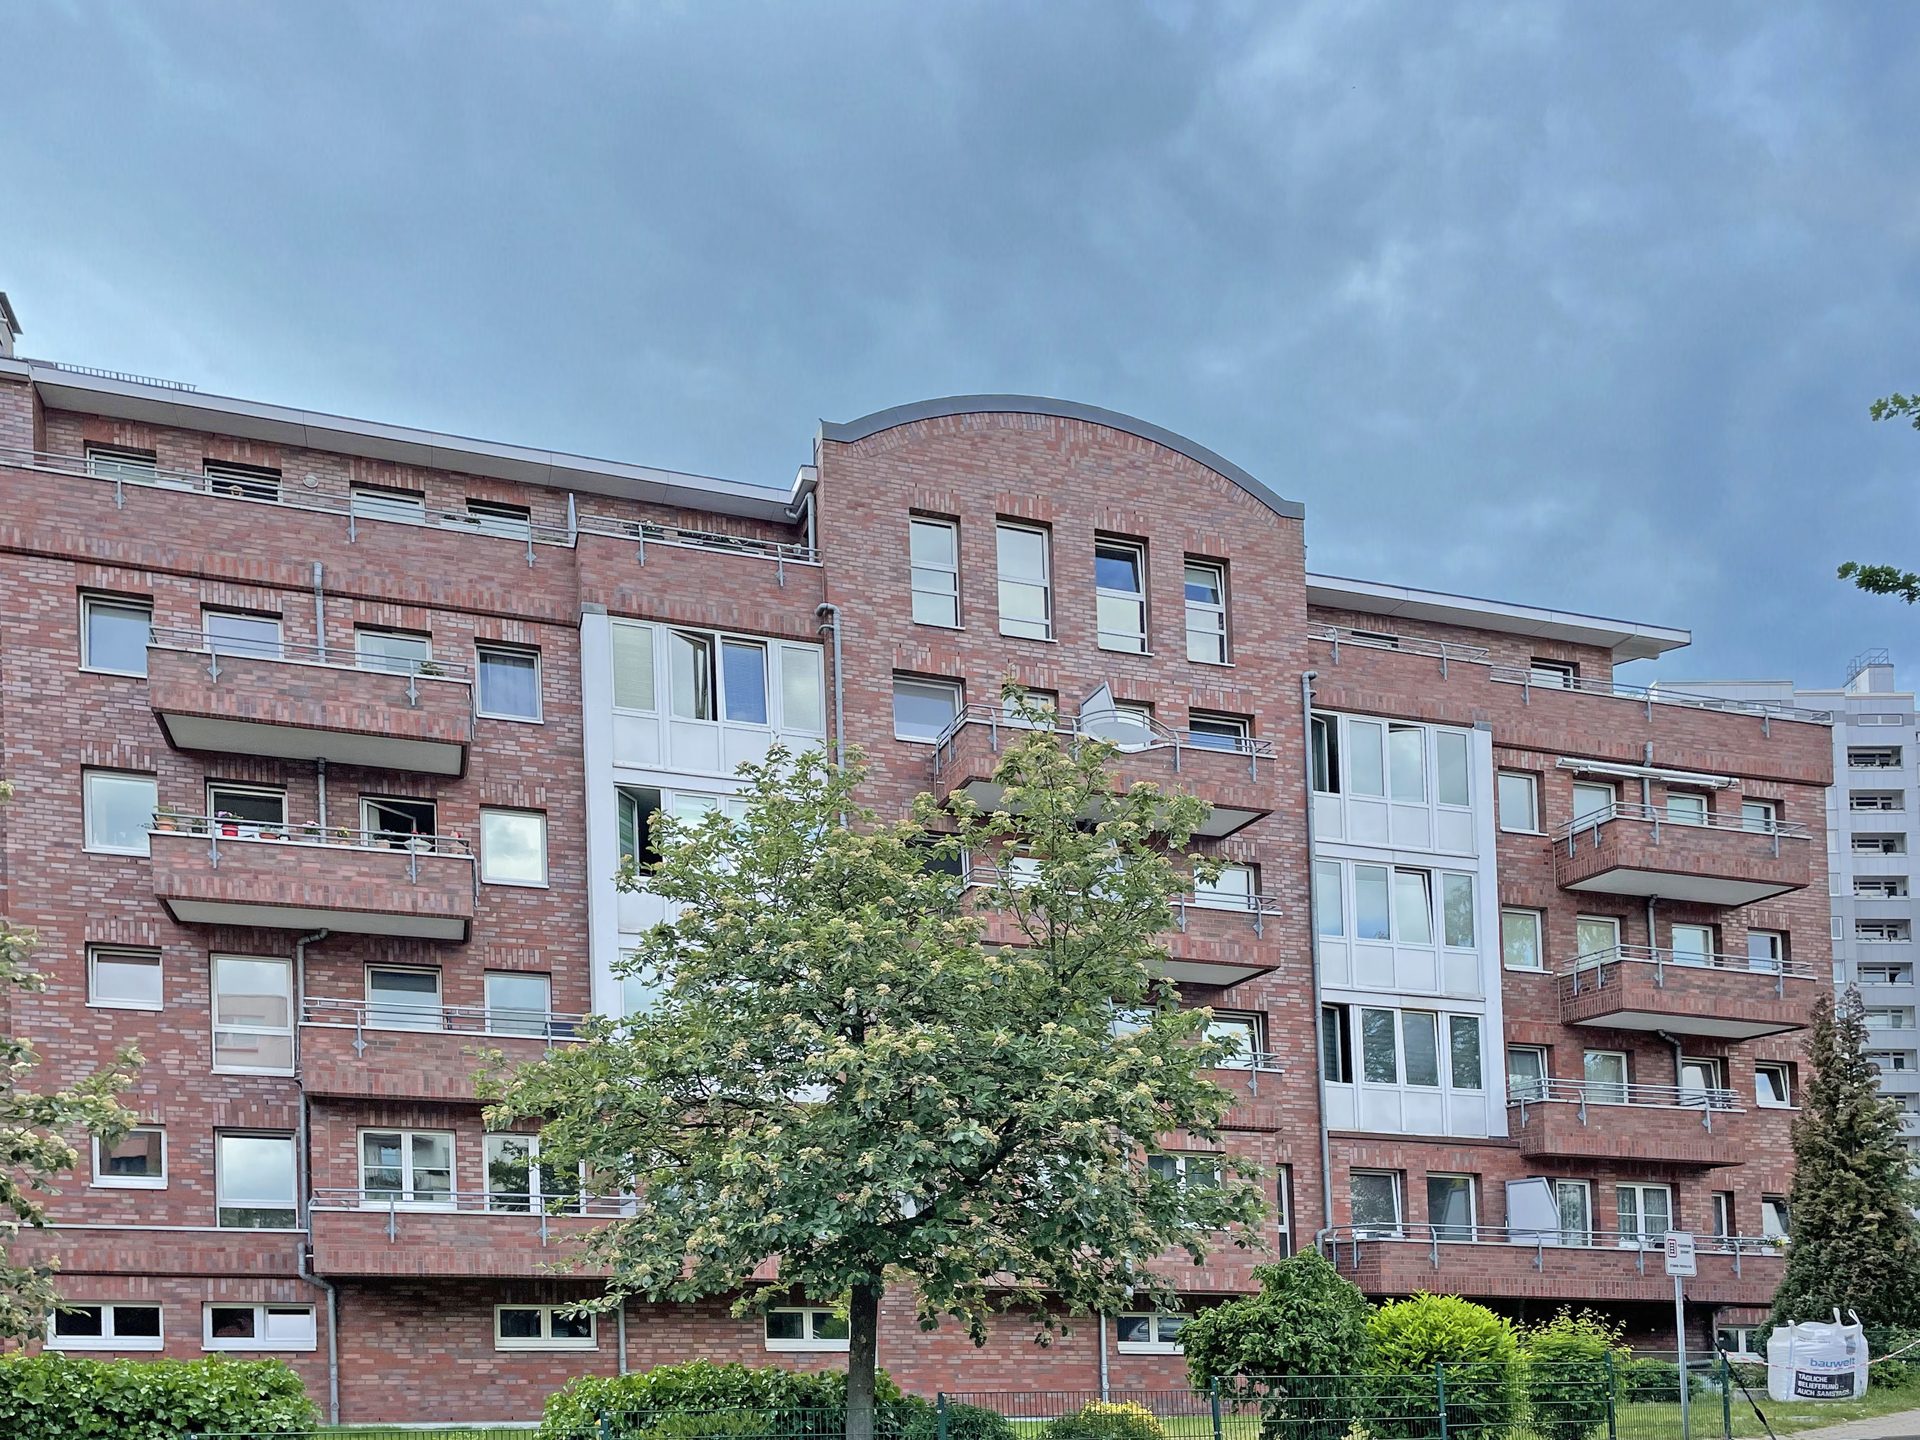 Immobilienangebot - Bergedorf / Hamburg - Alle - Kapitalanlage im Herzen von Bergedorf inkl. TG